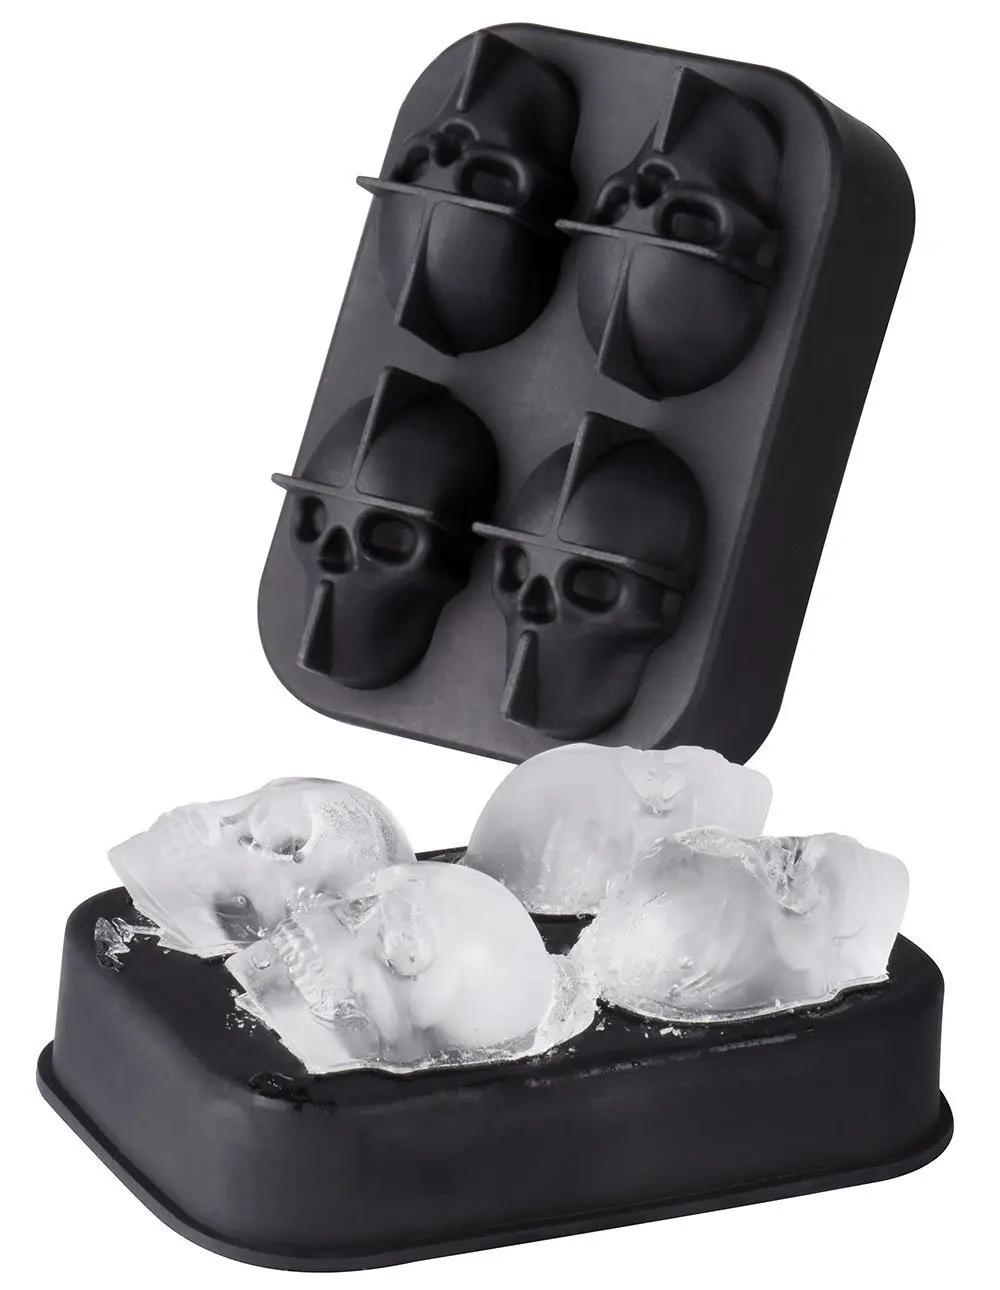 3D череп льда производитель кубиков бар вечерние виски вино силиконовые формы летние кубики льда лоток инструменты для мороженого кухонные аксессуары